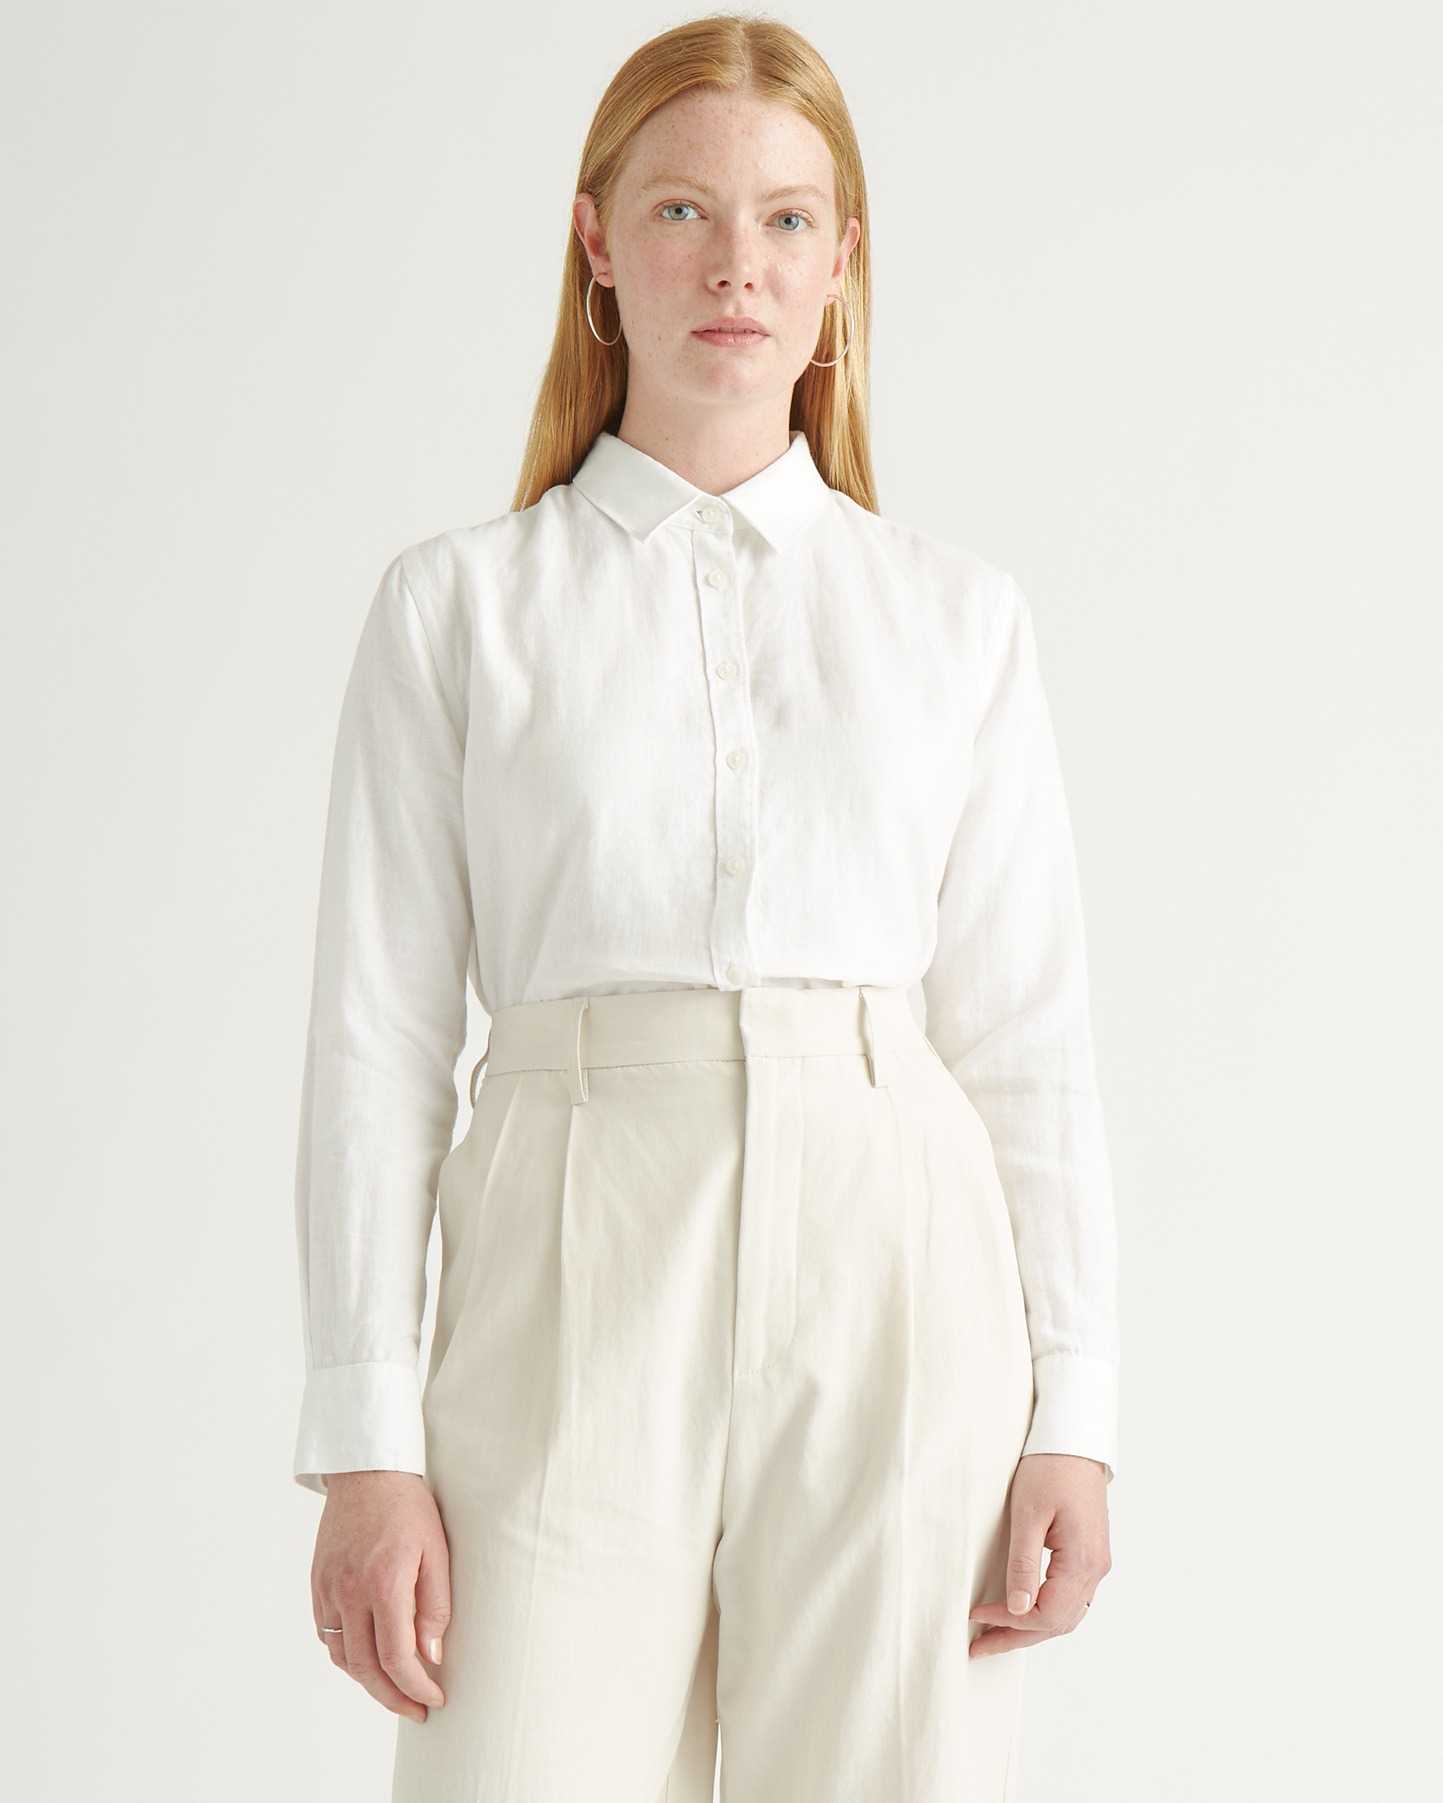 Long Sleeve Shirts for Women Under 10 Dollars Women Top Linen